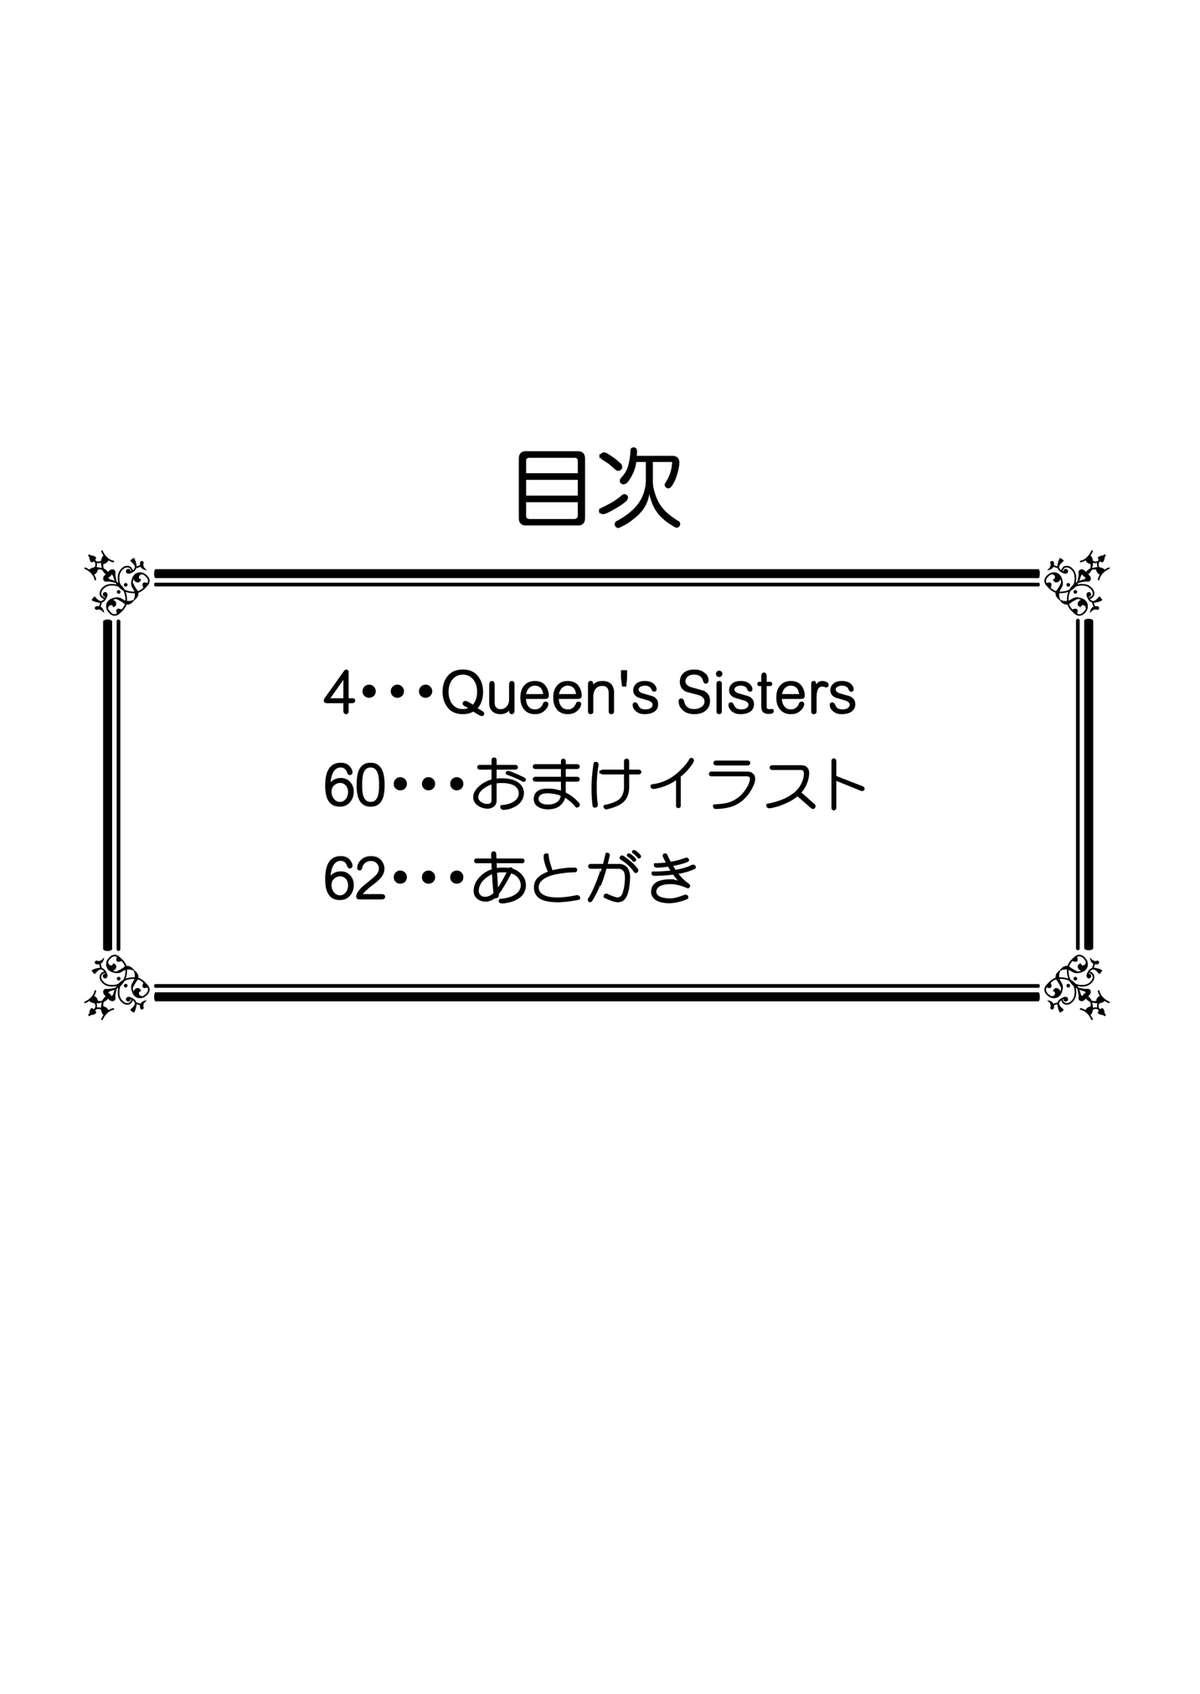 Queen's Sisters 3